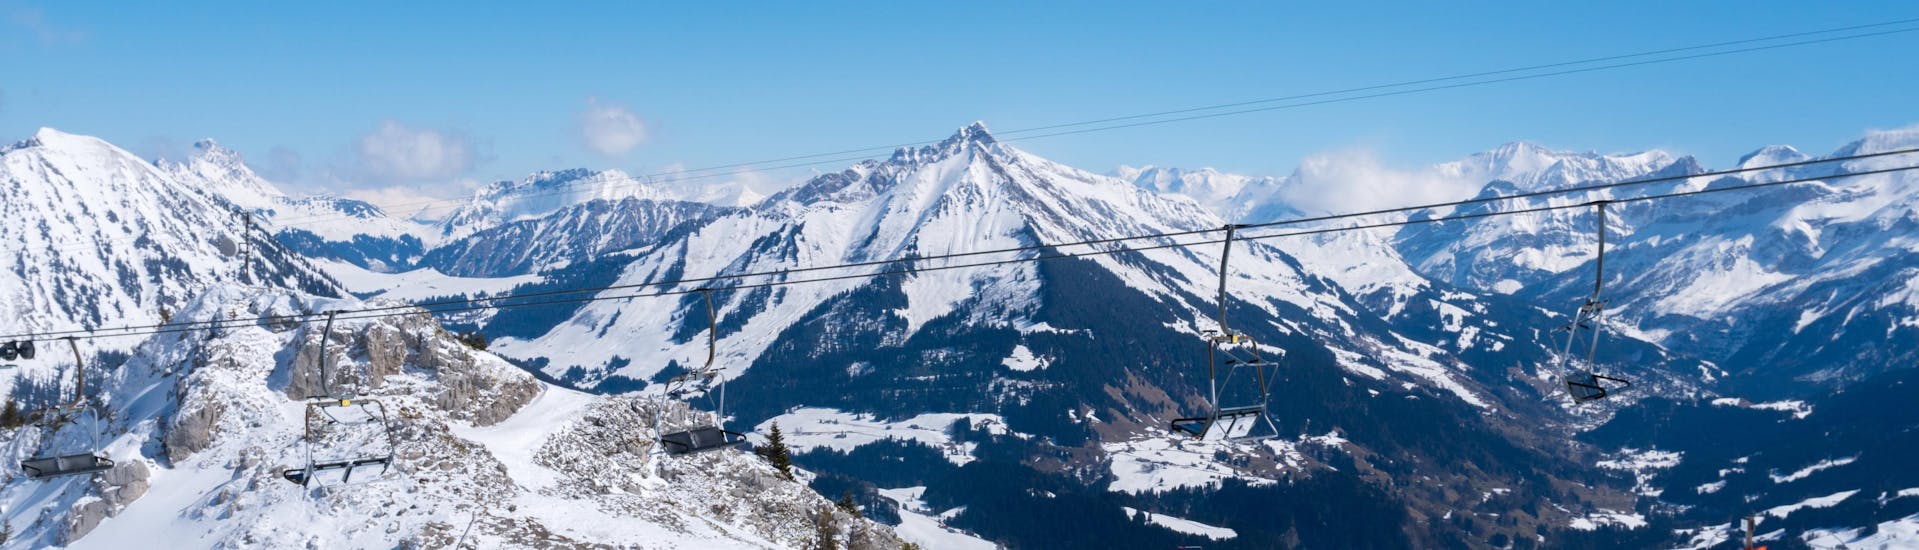 Une image de plusieurs skieurs descendant l'une des pistes de la station de ski suisse de Leysin, une destination populaire pour les skieurs en herbe qui souhaitent apprendre à skier en prenant un cours de ski avec une des écoles de ski locales.